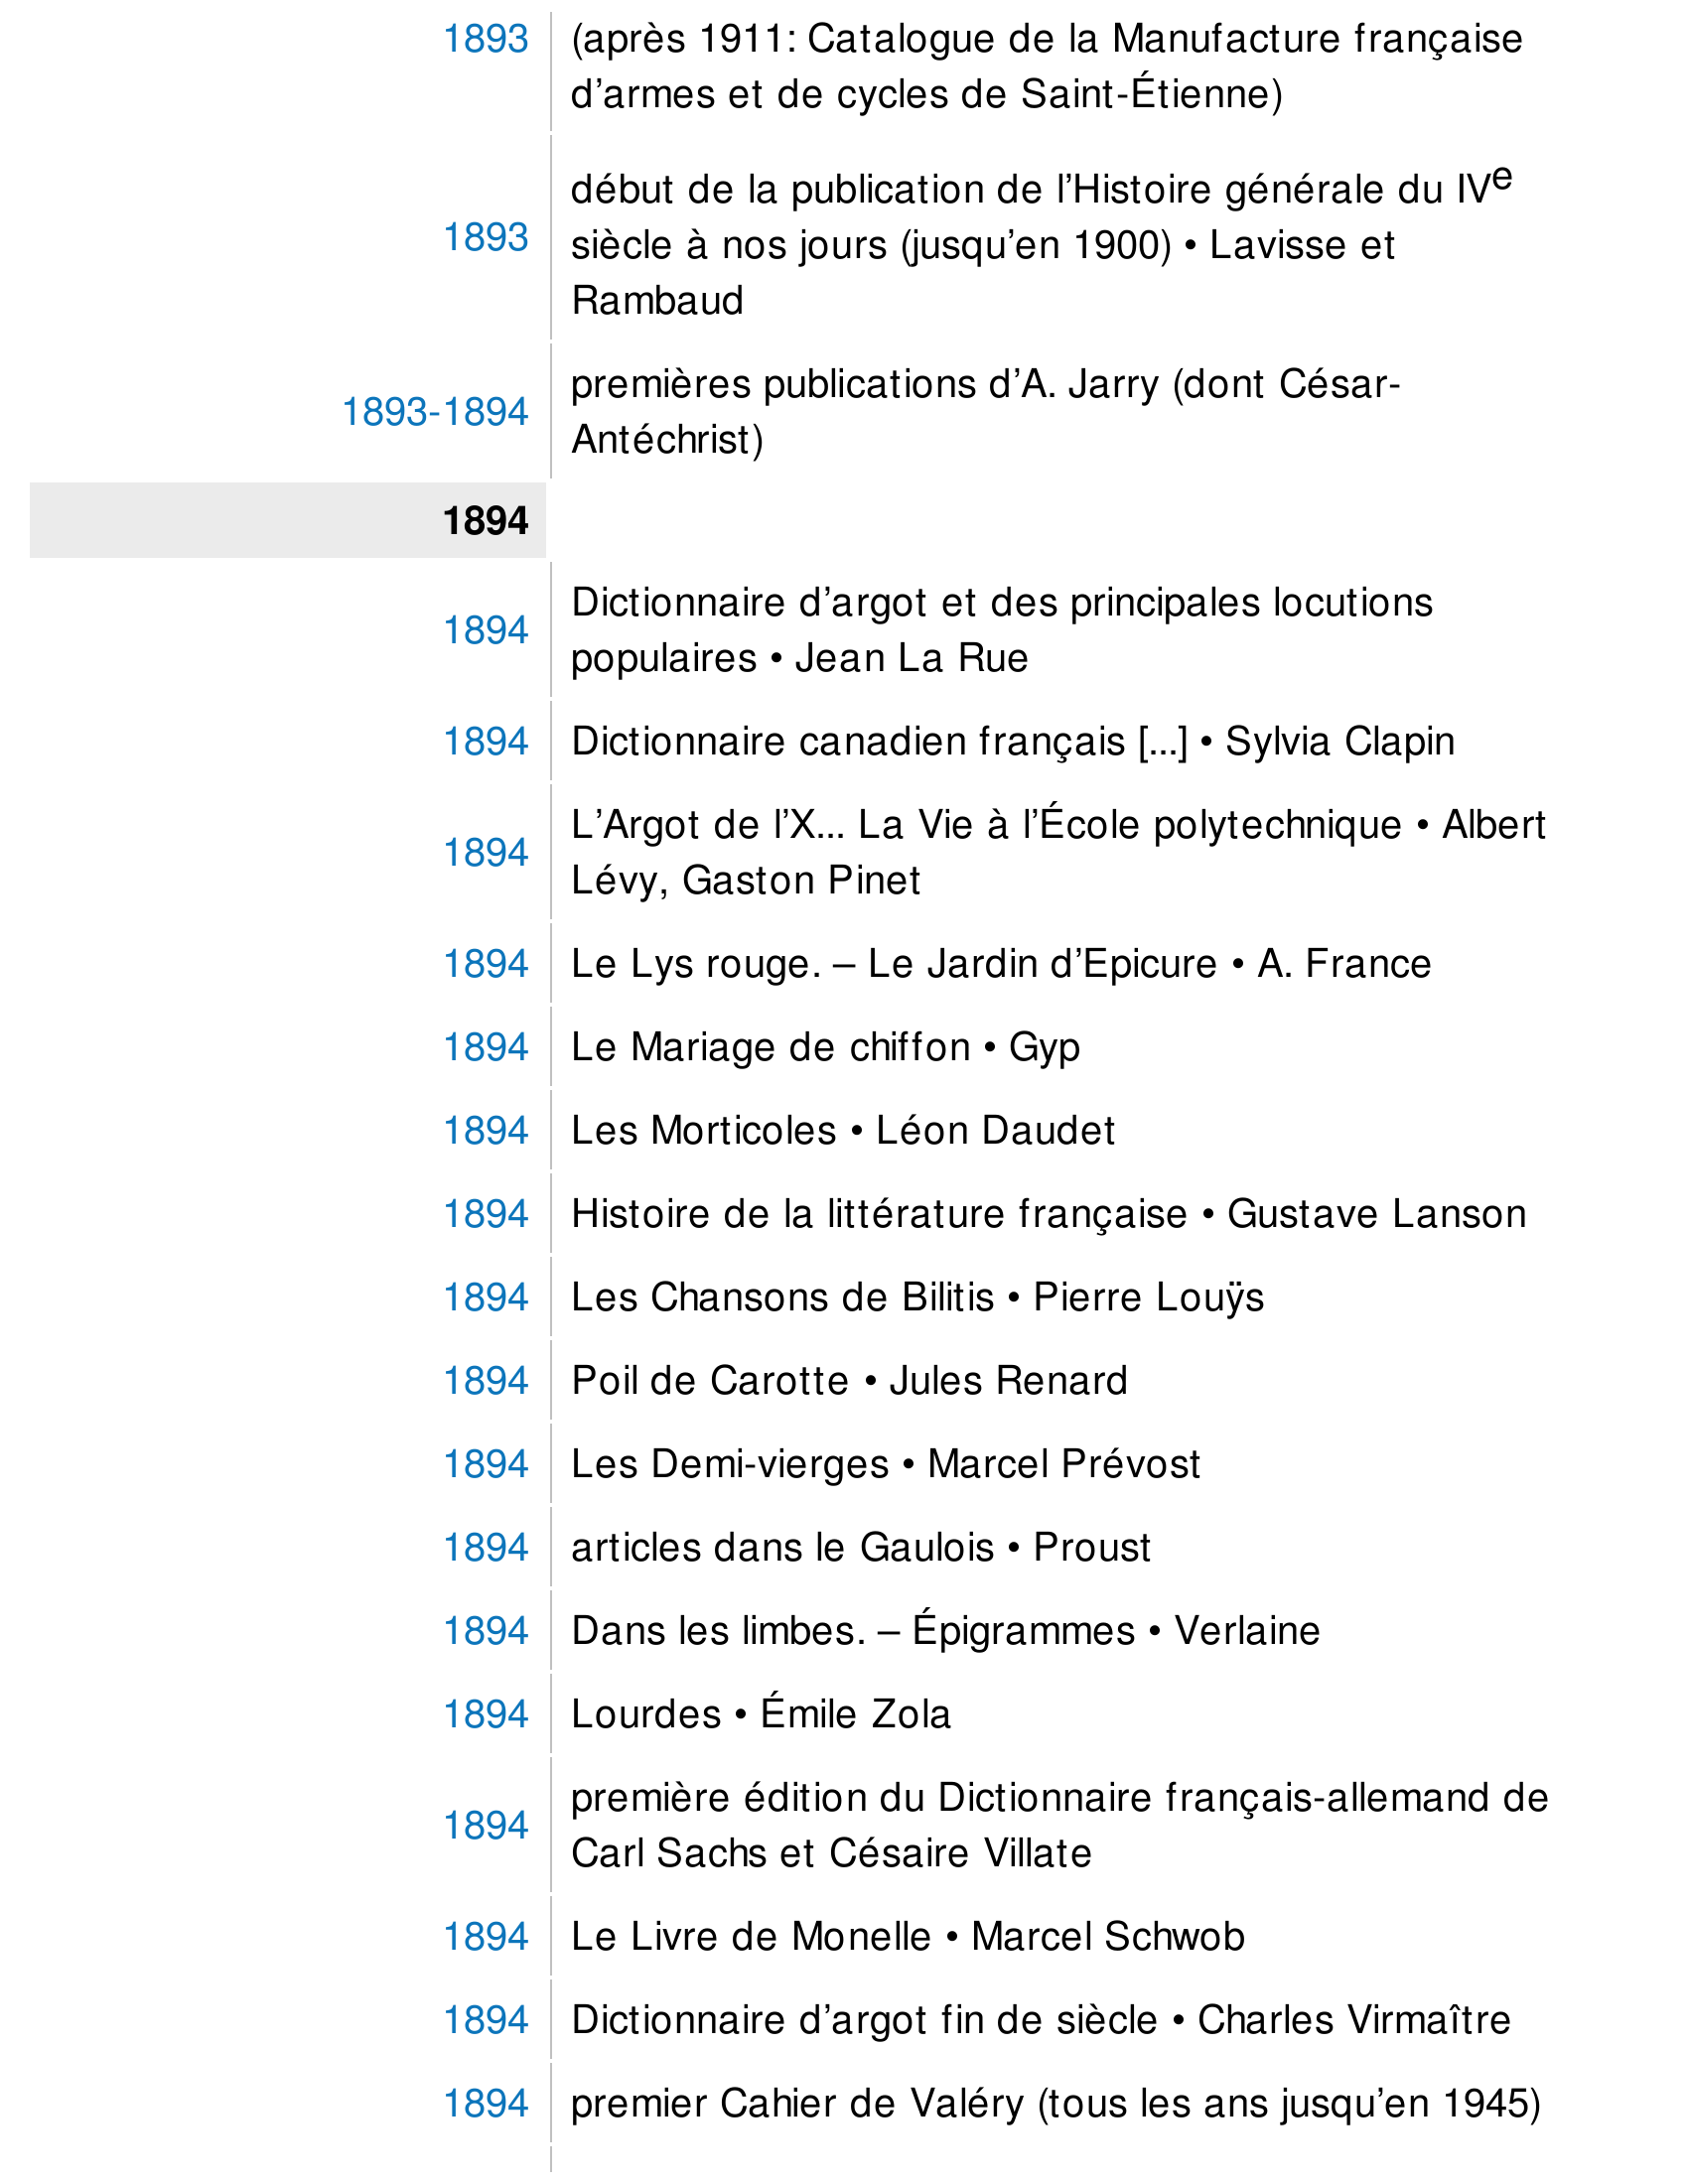 Prévisualisation du document 1892
1892

1892
1892-1893

La Débâcle o É mile Zola
Le Cyclisme théorique et pratique o L .